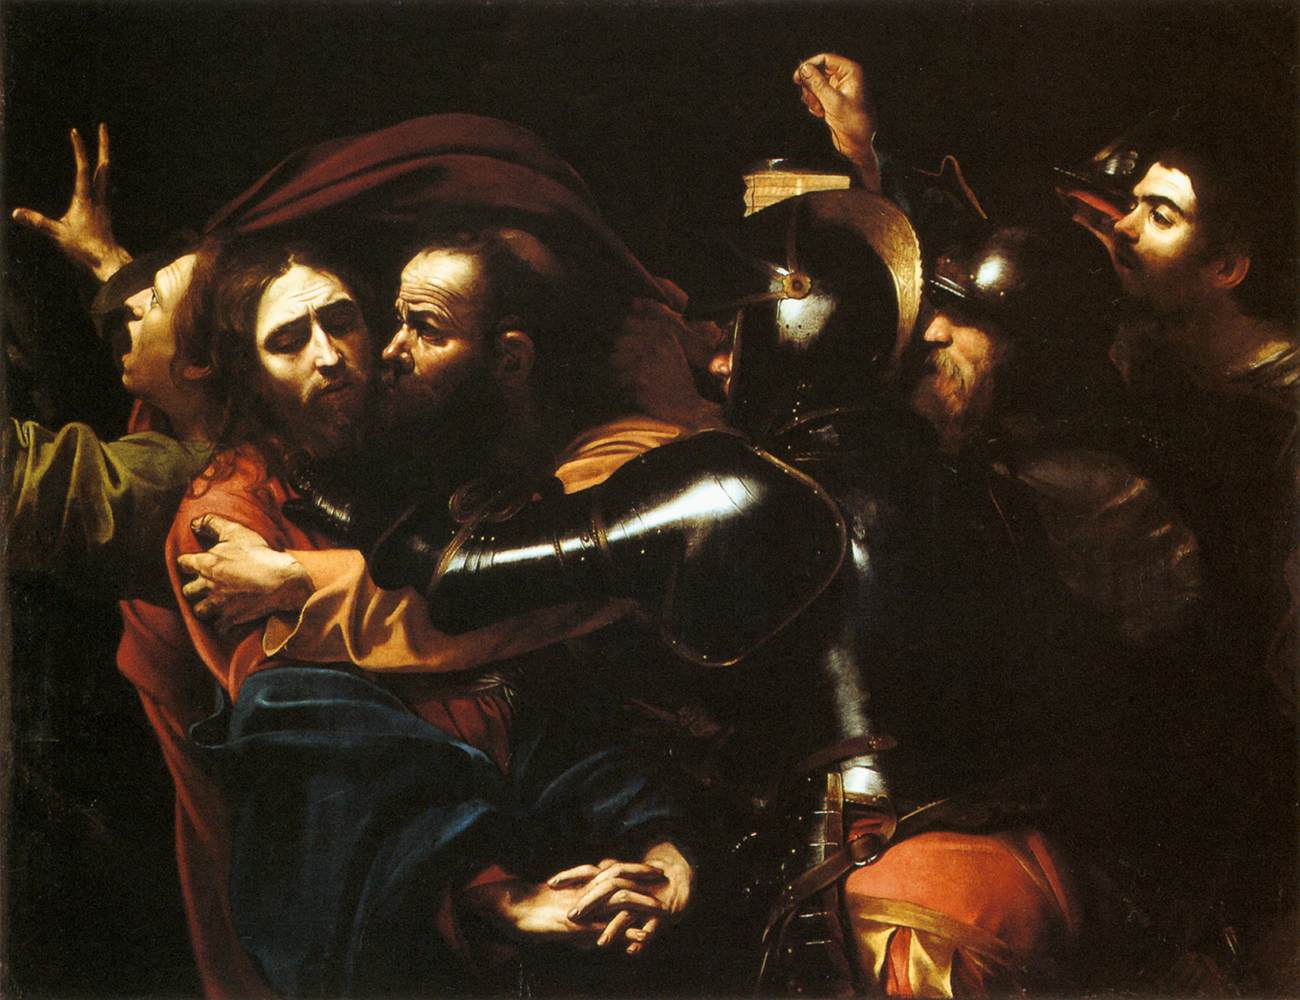 Cattura di Cristo by Michelangelo Merisi - 1602 - 133,5 cm×169,5 cm 